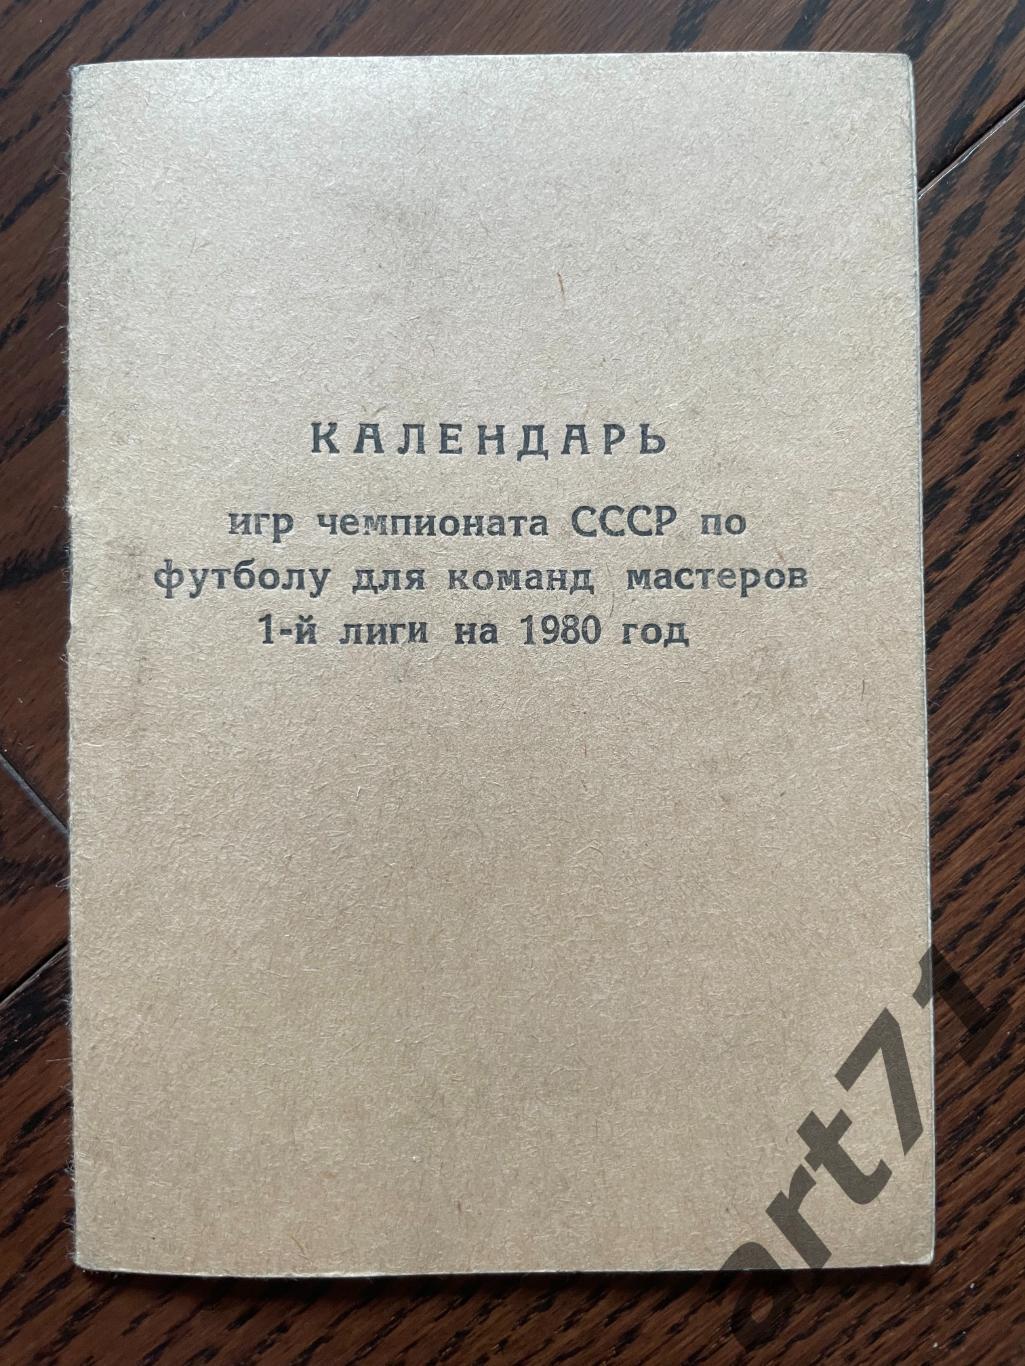 СКА Хабаровск 1980. Календарь игр